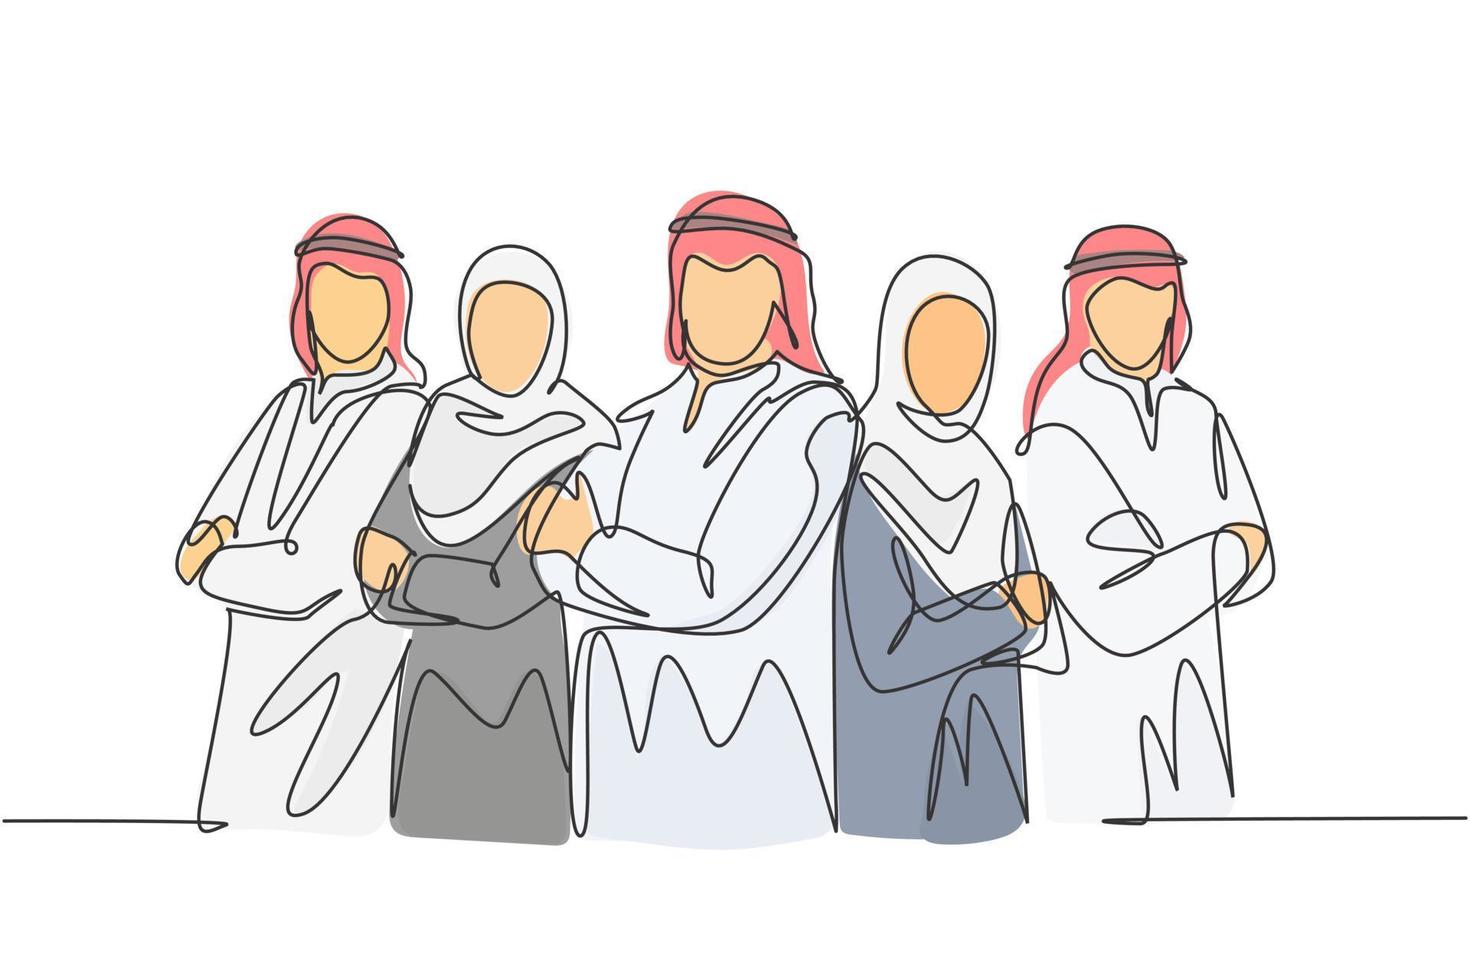 un disegno a tratteggio continuo di giovani uomini d'affari musulmani allineati ordinatamente con le mani incrociate sul petto. abbigliamento islamico shemag, kandura, sciarpa, hijab. illustrazione vettoriale di disegno a linea singola